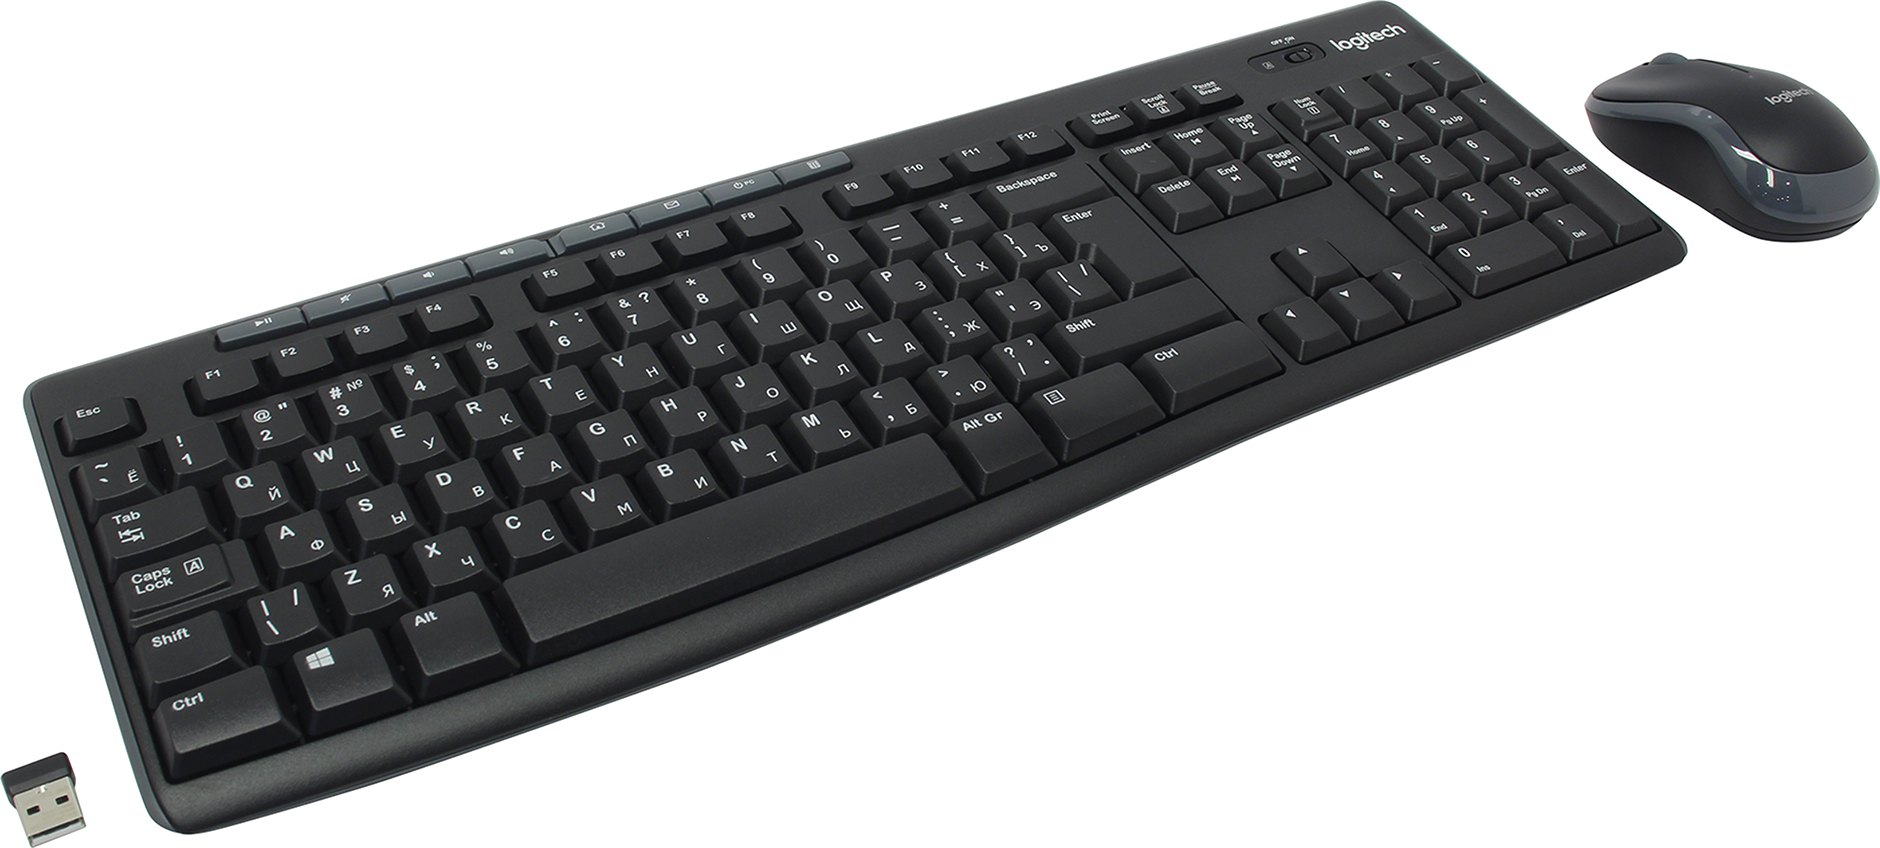 Клавиатура + мышь Logitech MK270, беспроводная, USB, черный (920-004518/920-003381) б/у, после ремонта, следы эксплуатации, комплект полный